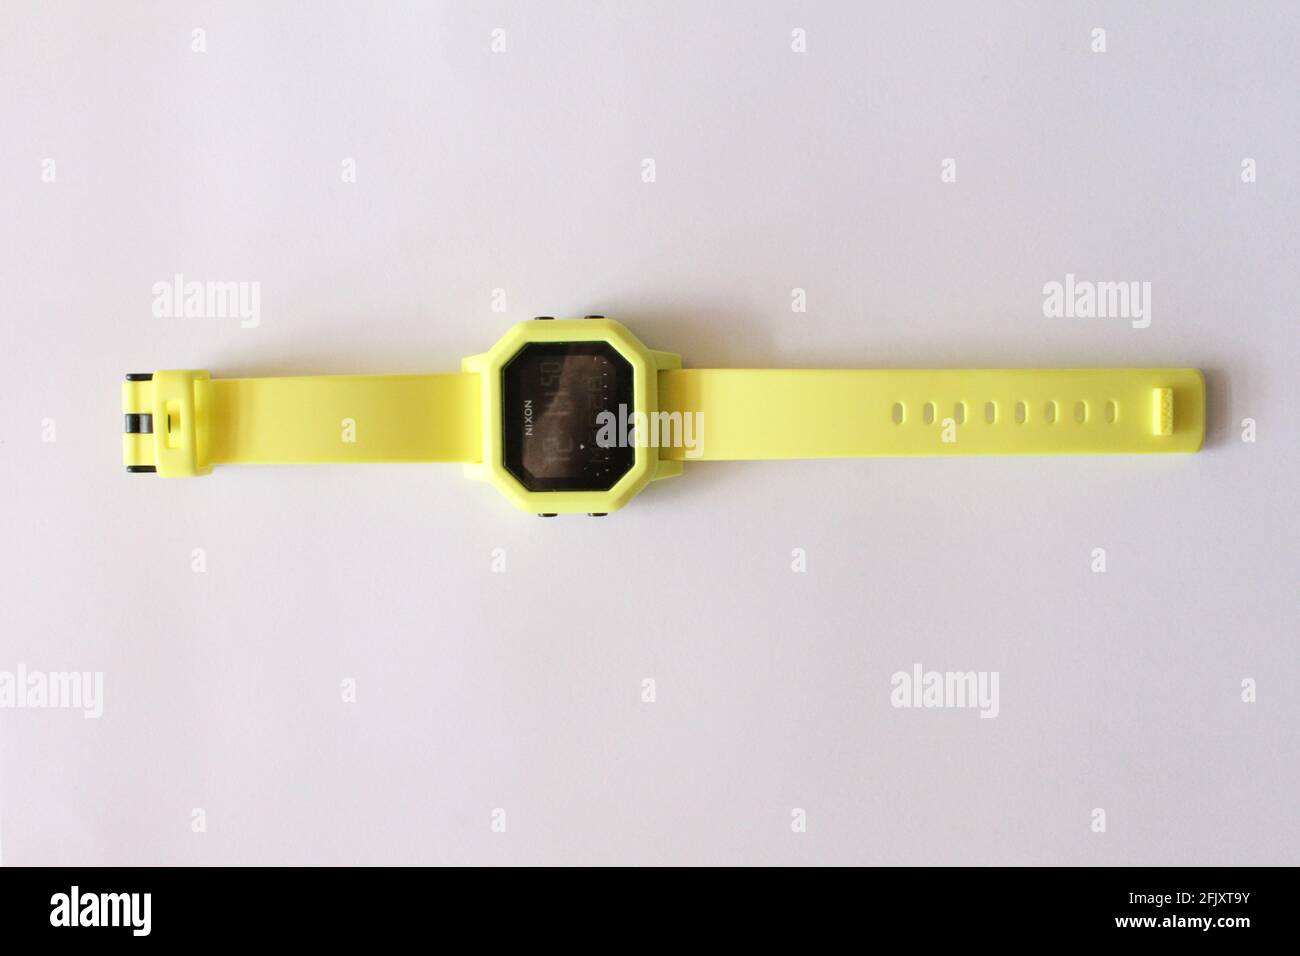 Orologio da polso Nixon Neon, digitale, su una superficie piatta bianca Foto Stock